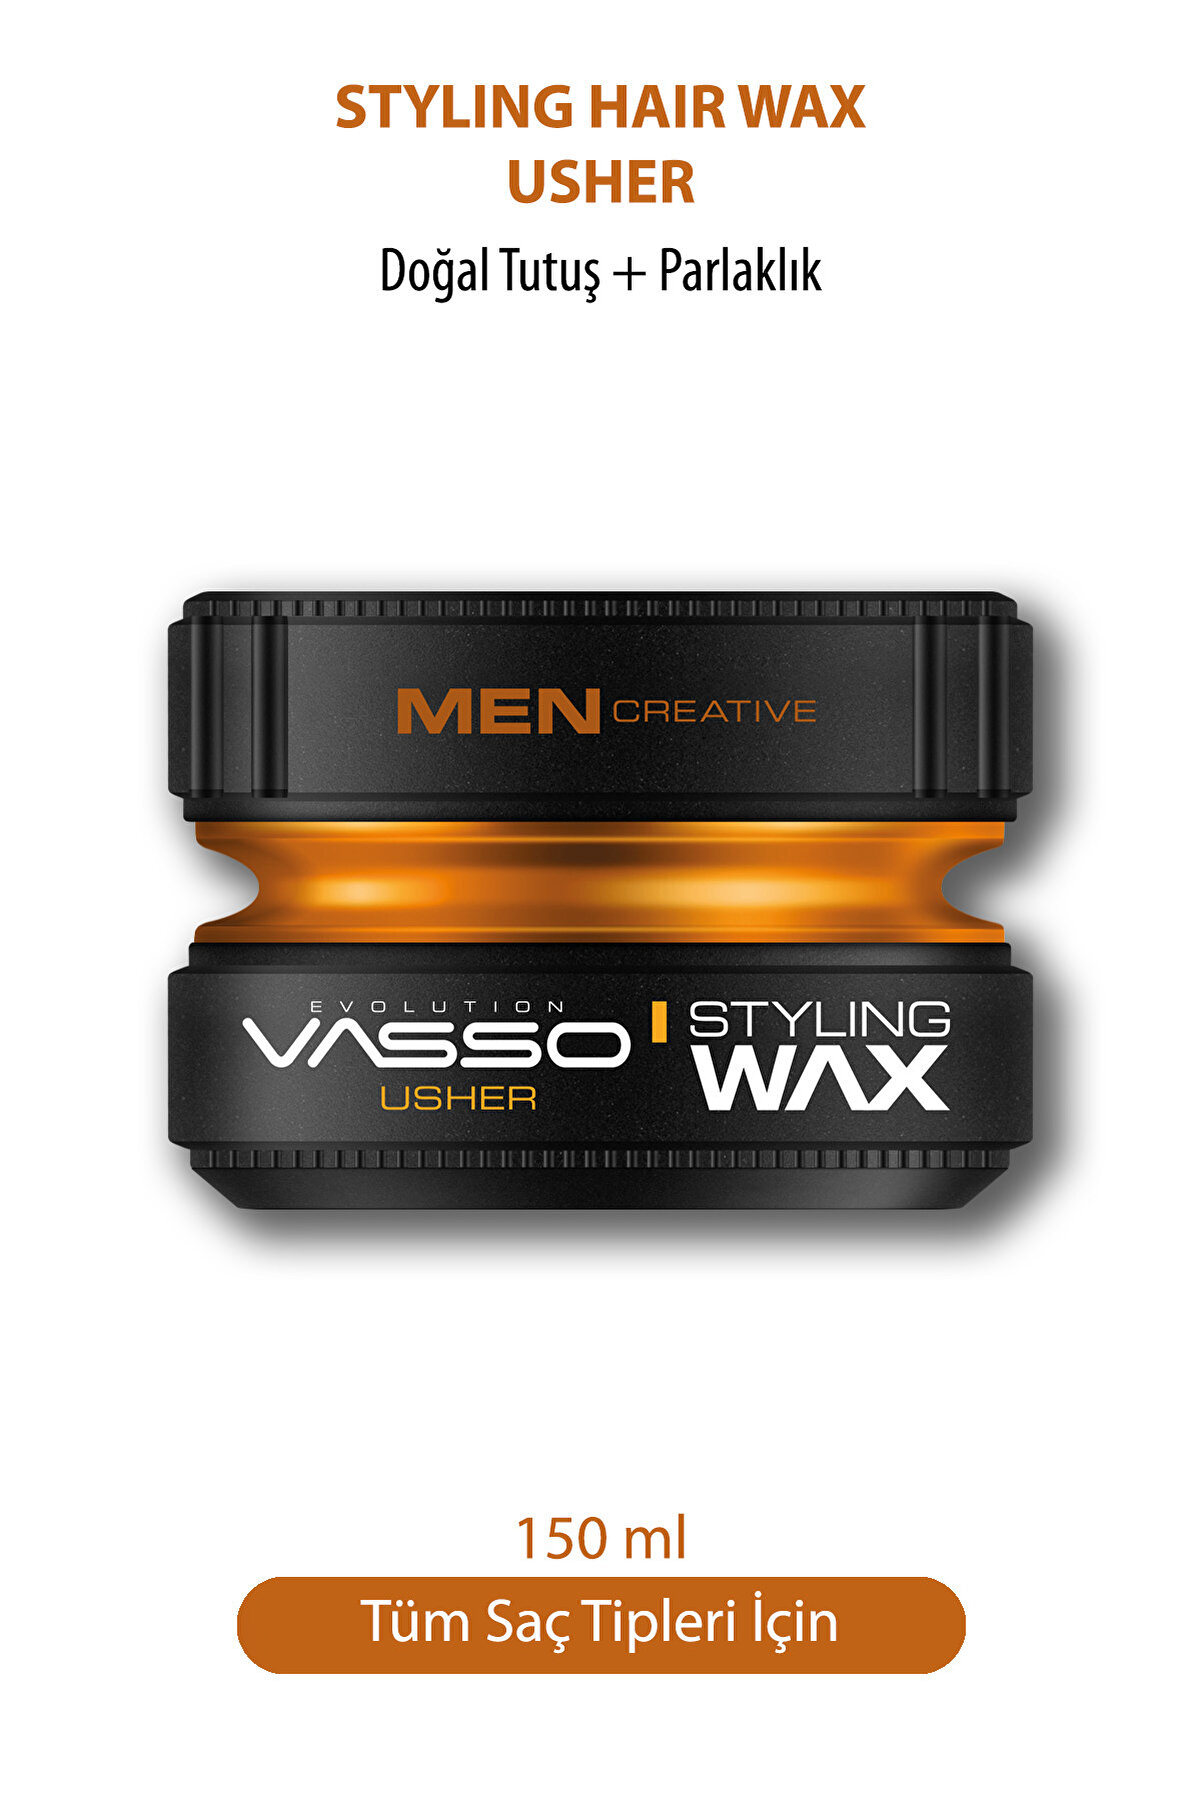 Vasso Men 24 Saat Tüm Saç Tipleri Için Parlaklık Ve Güçlü Tutuş Kazandıran Wax - Usher Pro Aqua 150 ml